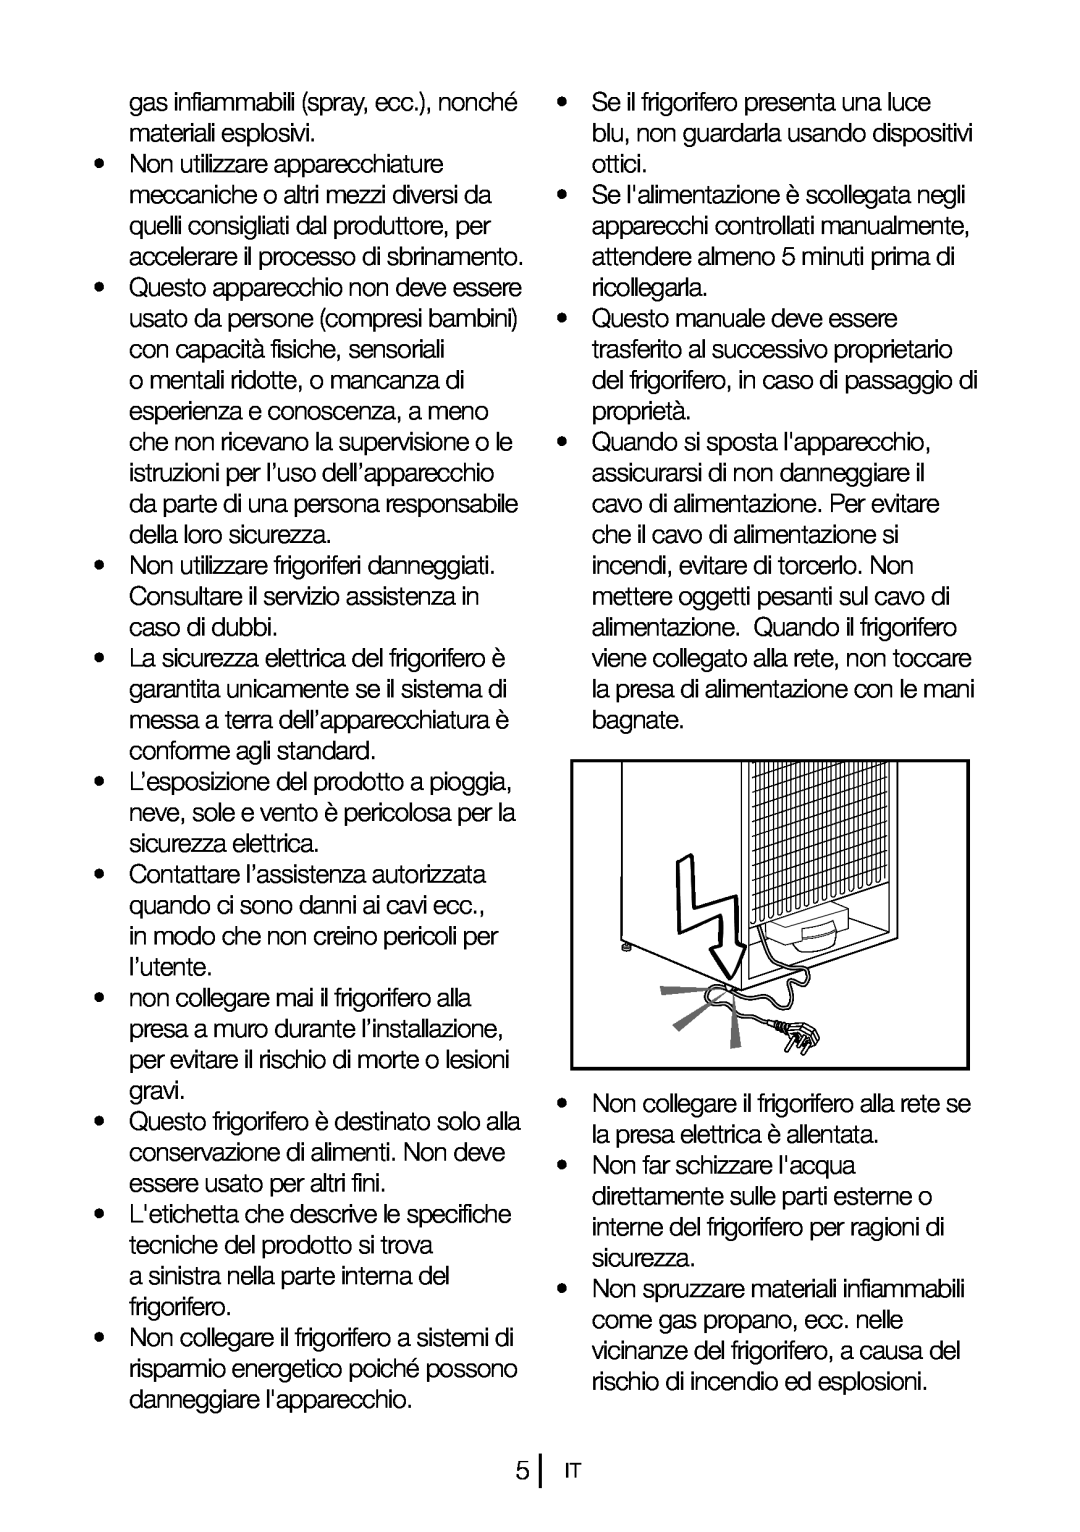 Blomberg DSM 9651 A+ manual •Non utilizzare frigoriferi danneggiati 